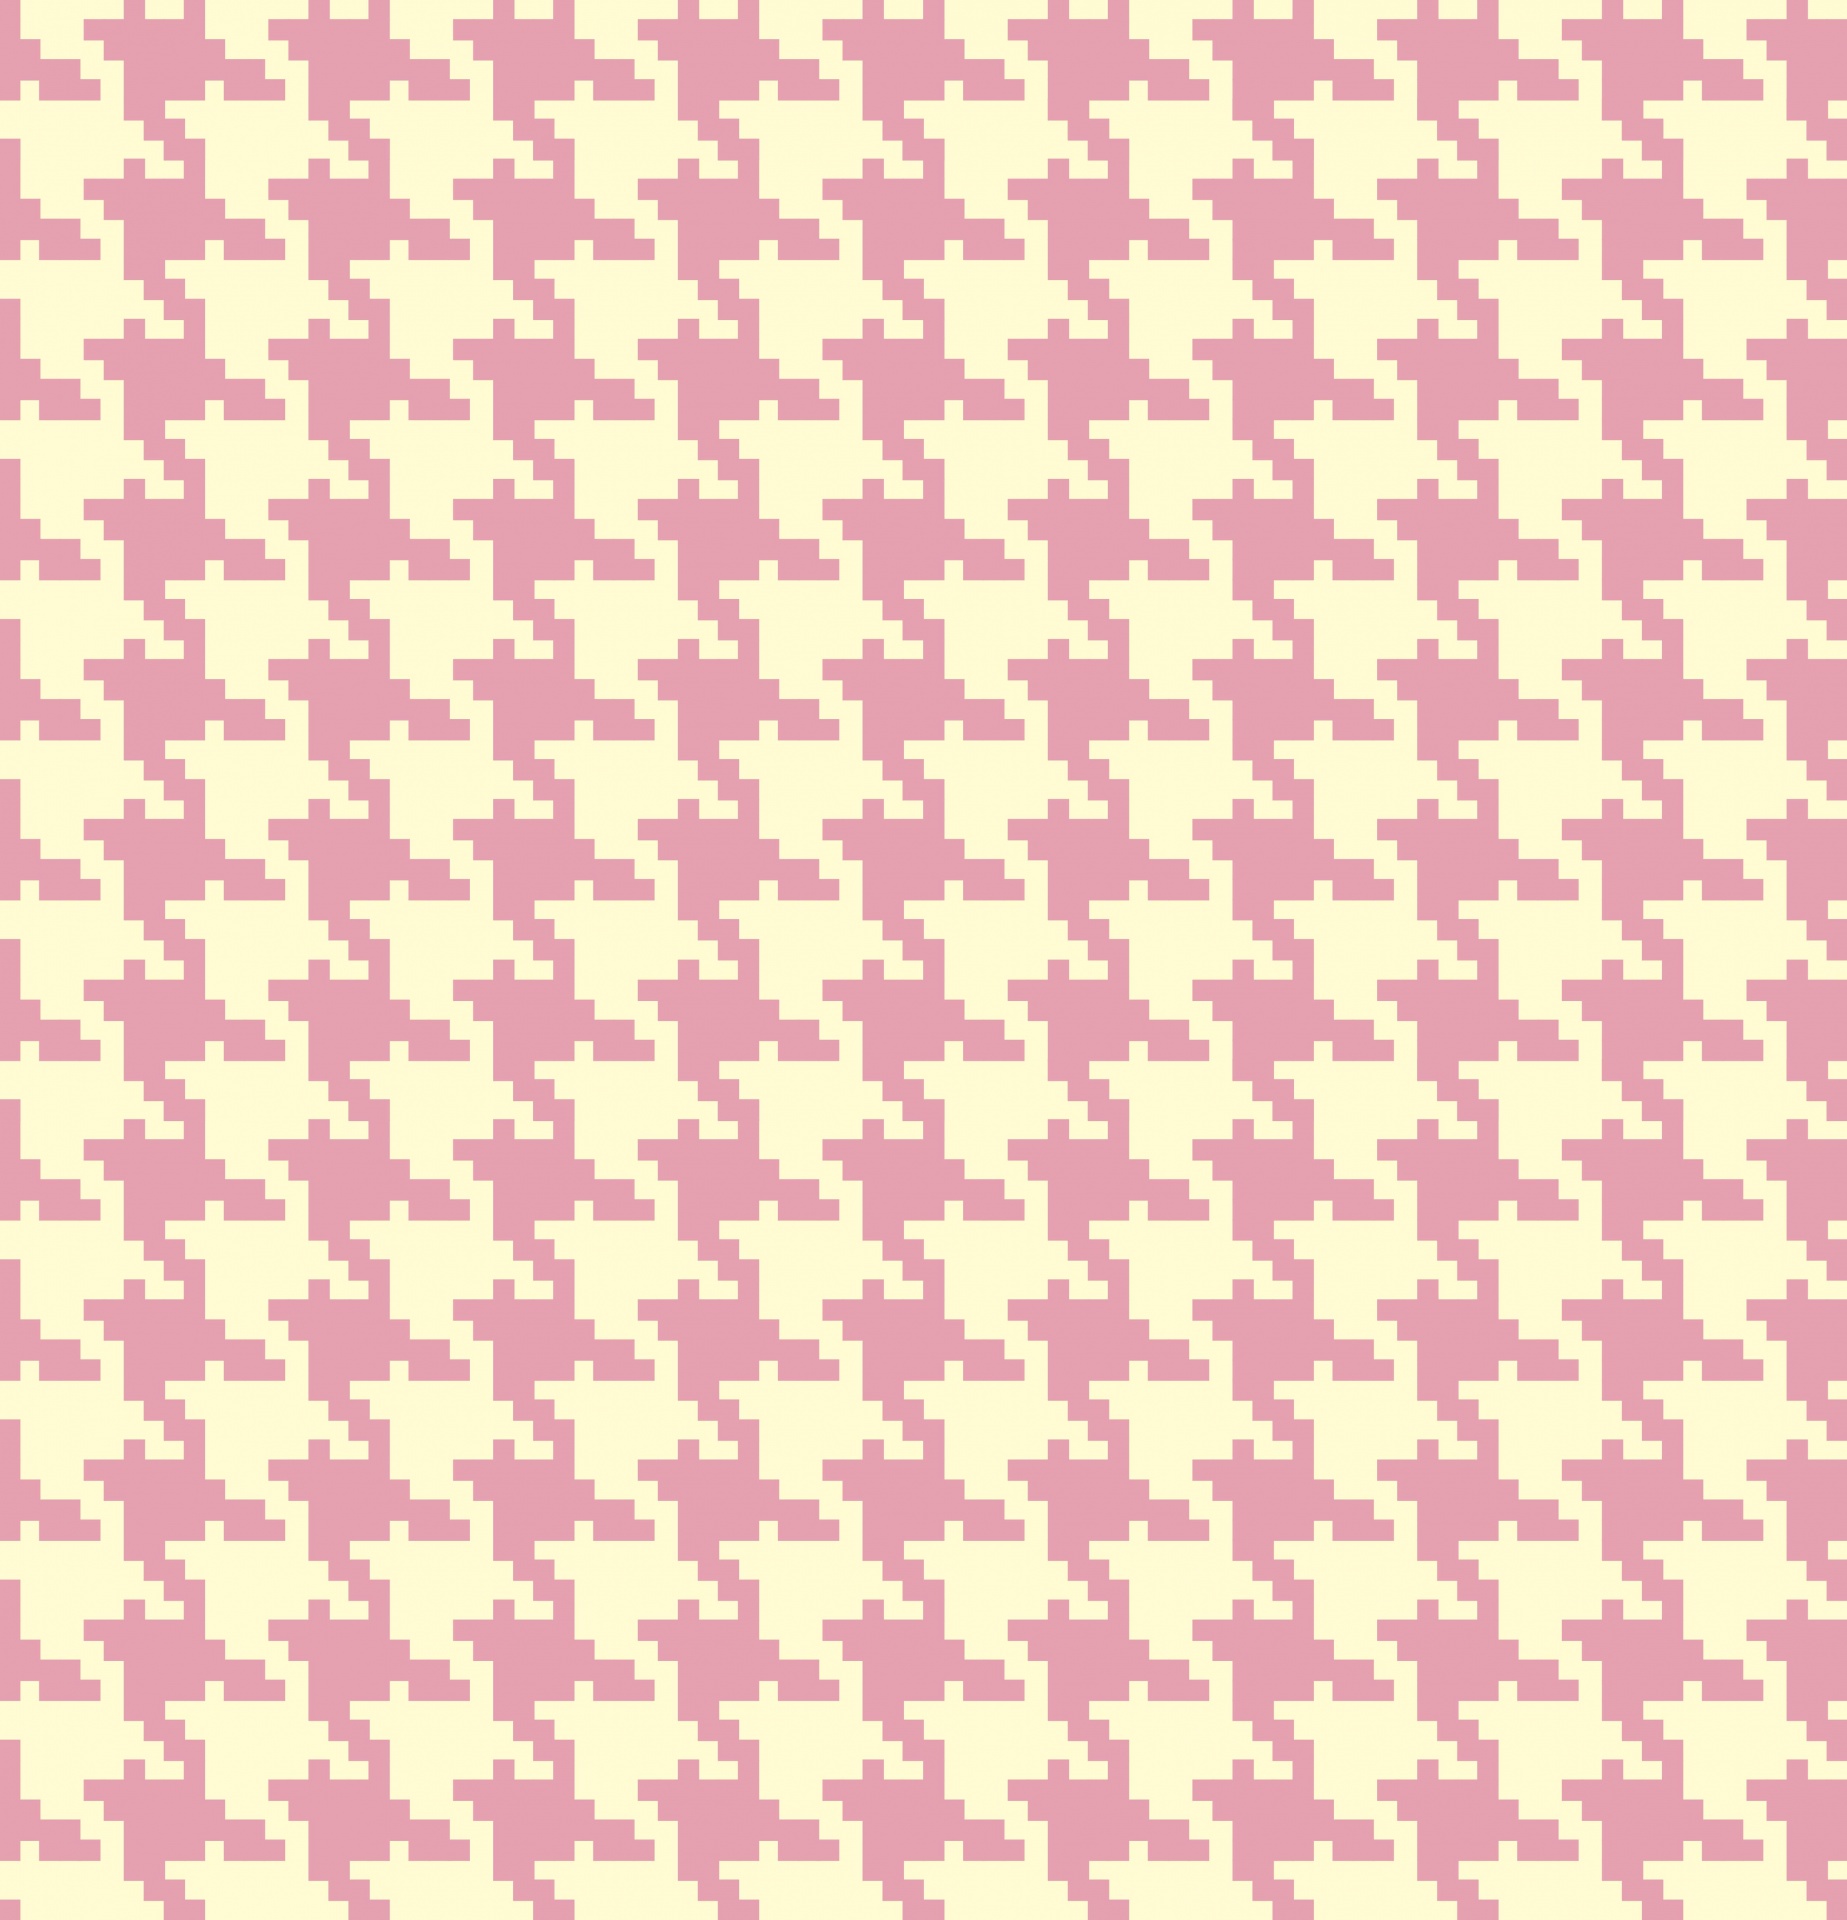 Houndstooth Pattern Pink Cream